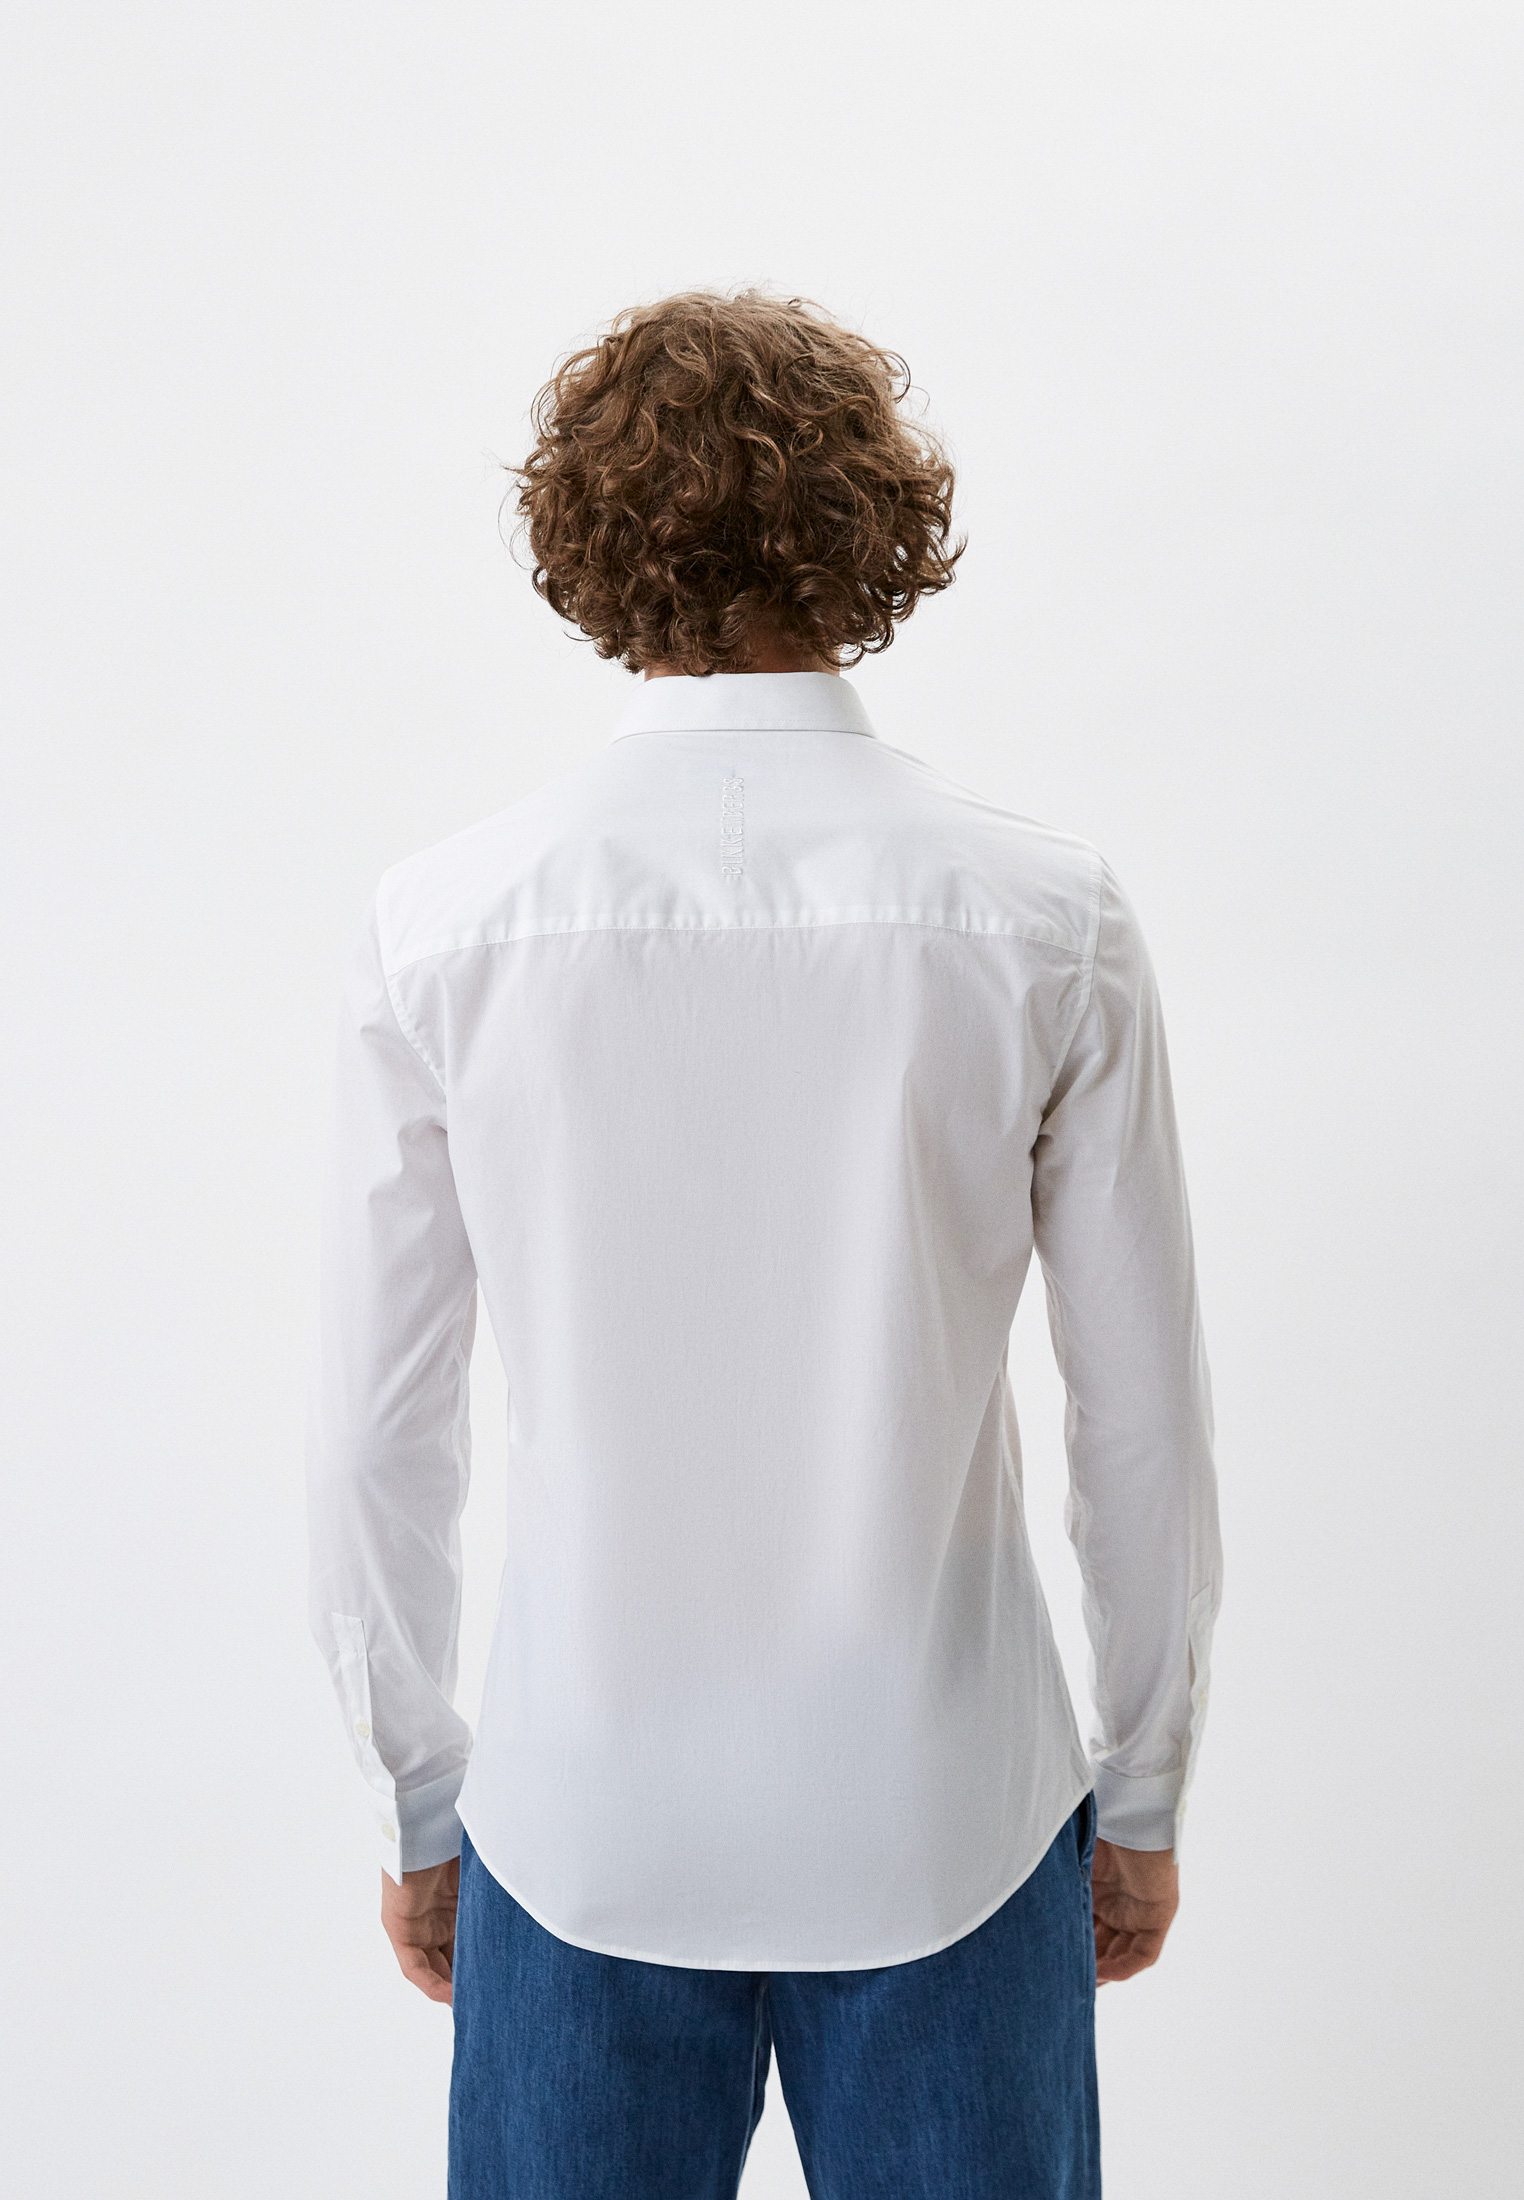 Рубашка с длинным рукавом Bikkembergs (Биккембергс) C C 009 07 S 2931: изображение 5